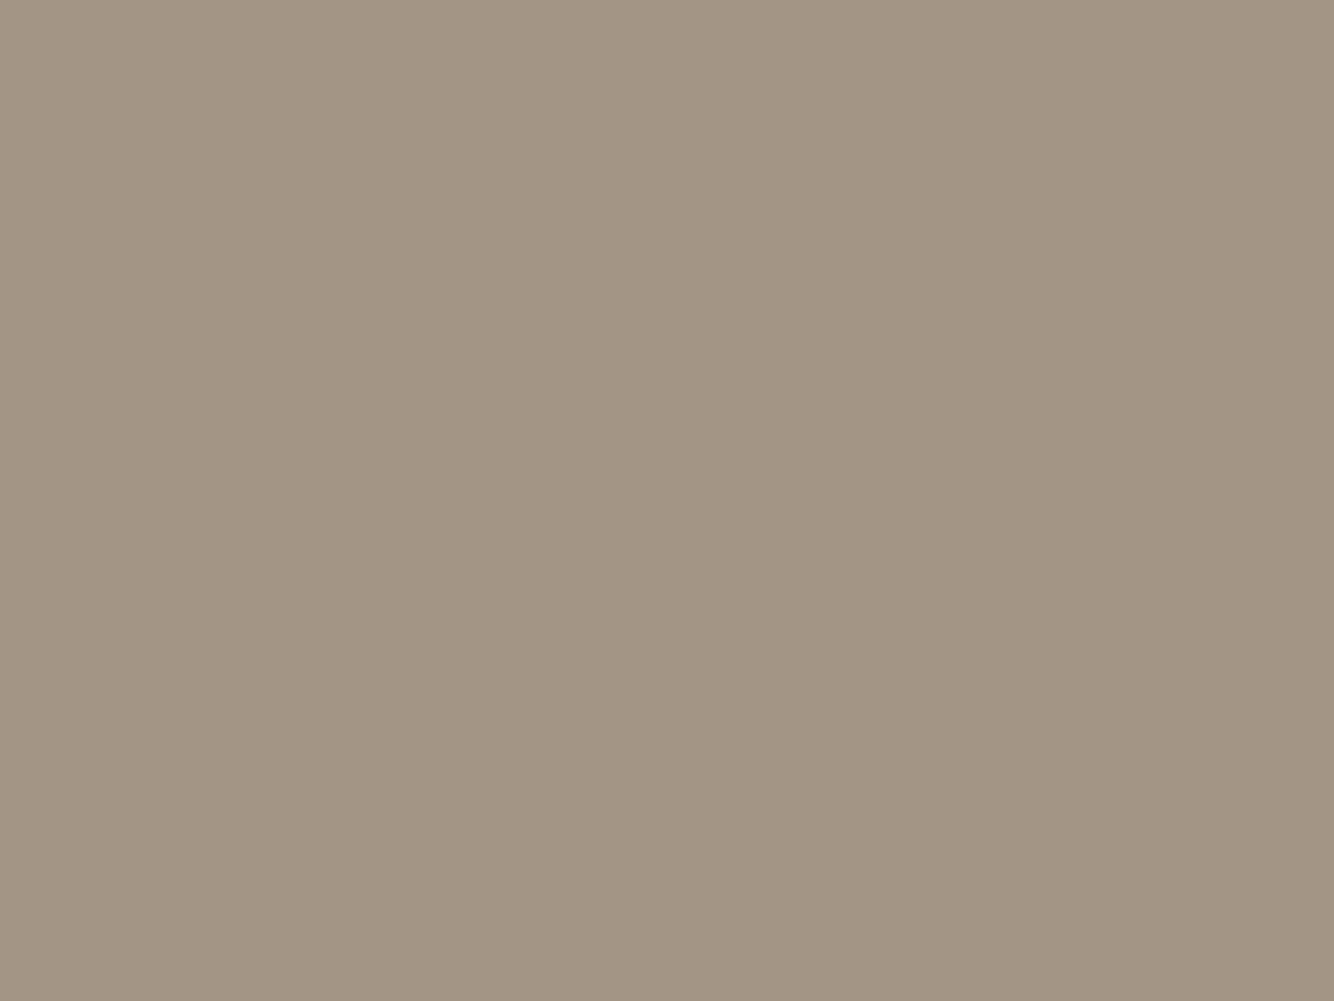 Александр Савинов. Белый мул на фоне моря (фрагмент). 1909. Научно-исследовательский музей при Российской академии художеств, Санкт-Петербург